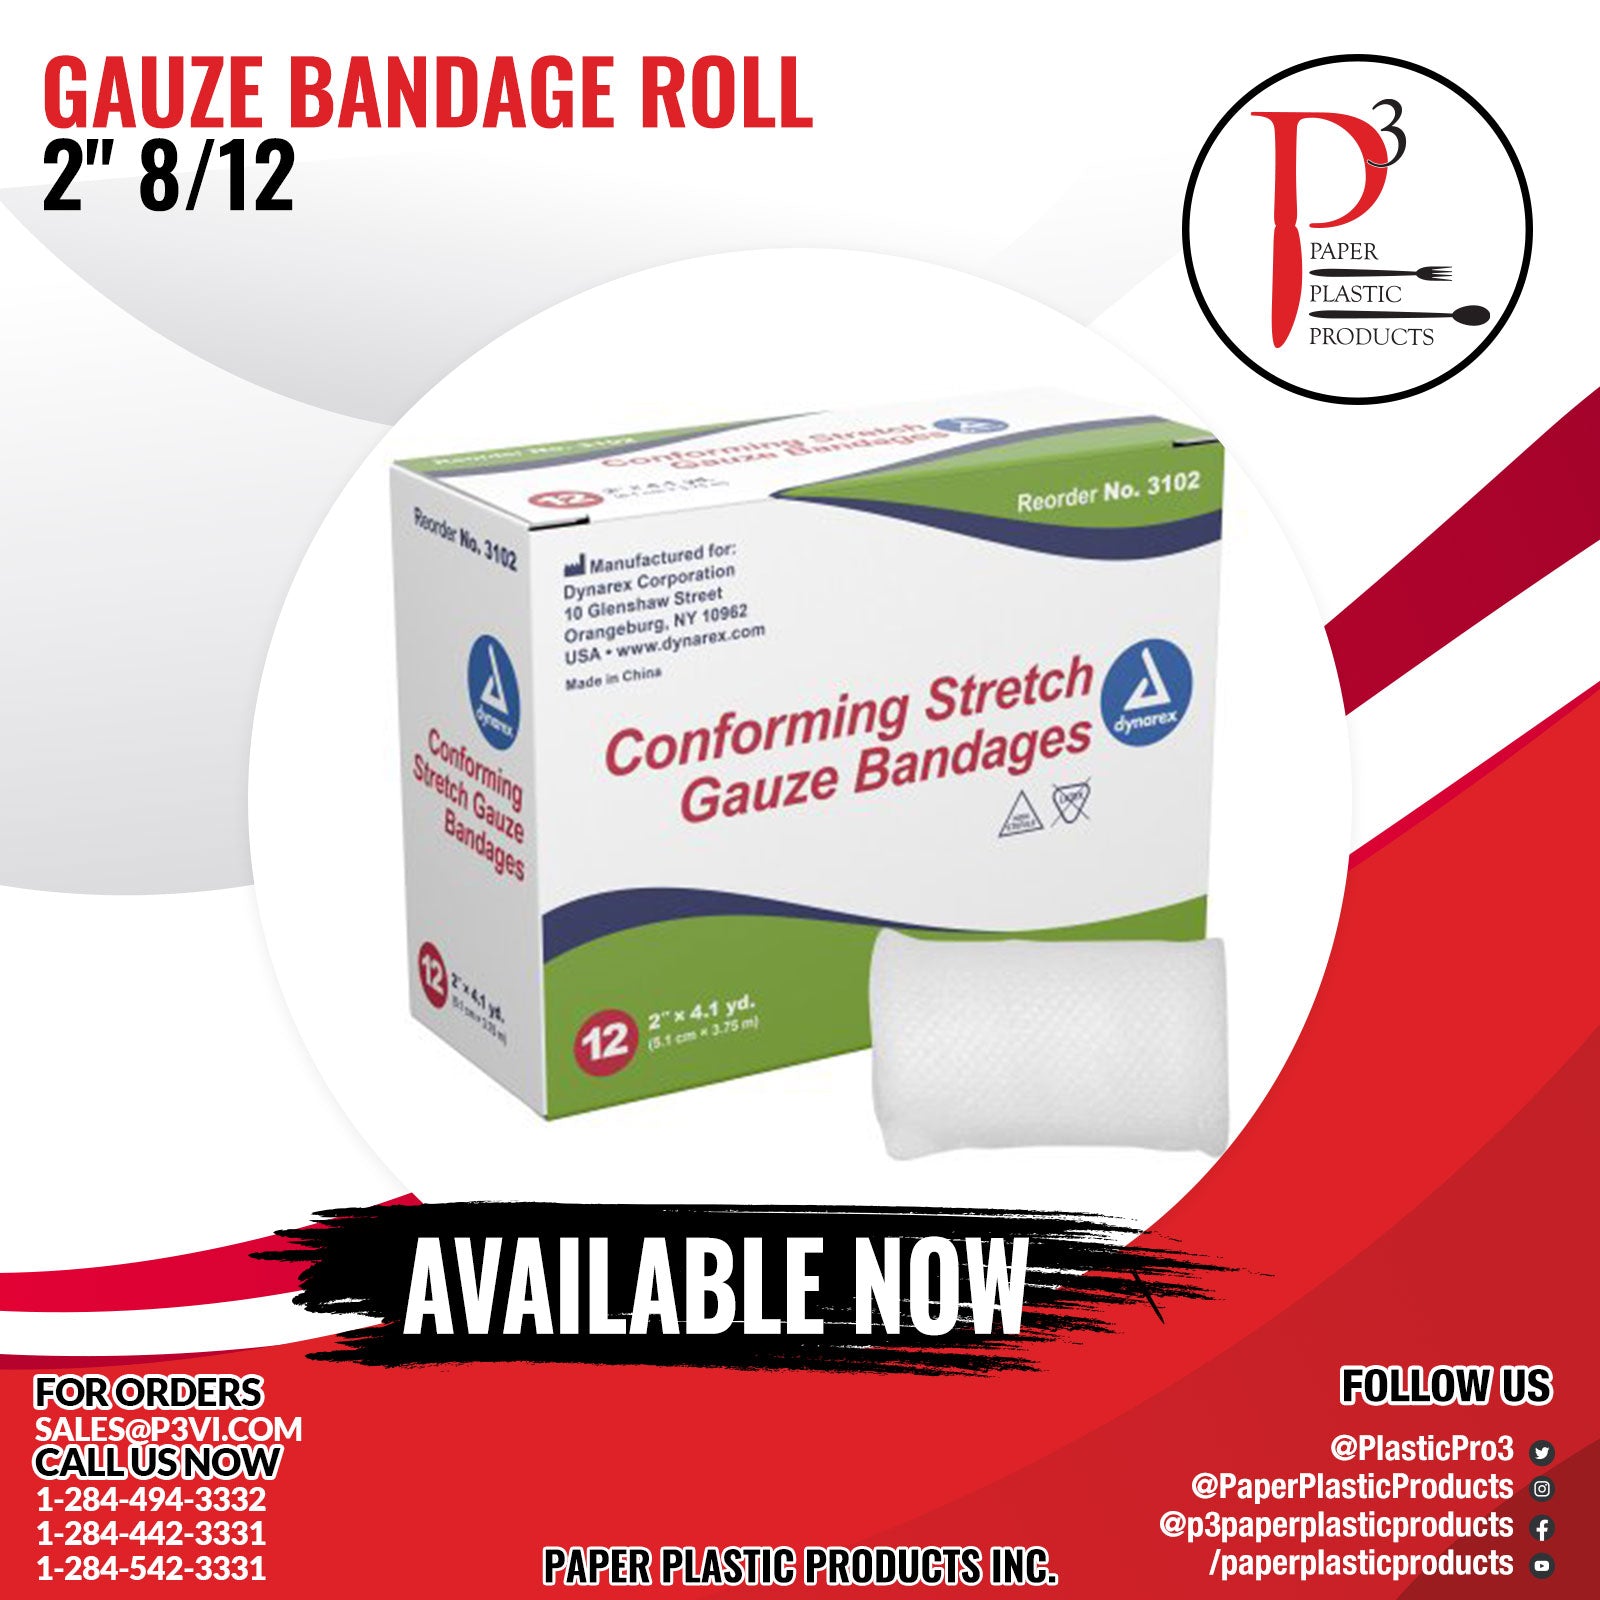 Gauze Bandage Roll 2" 8/12